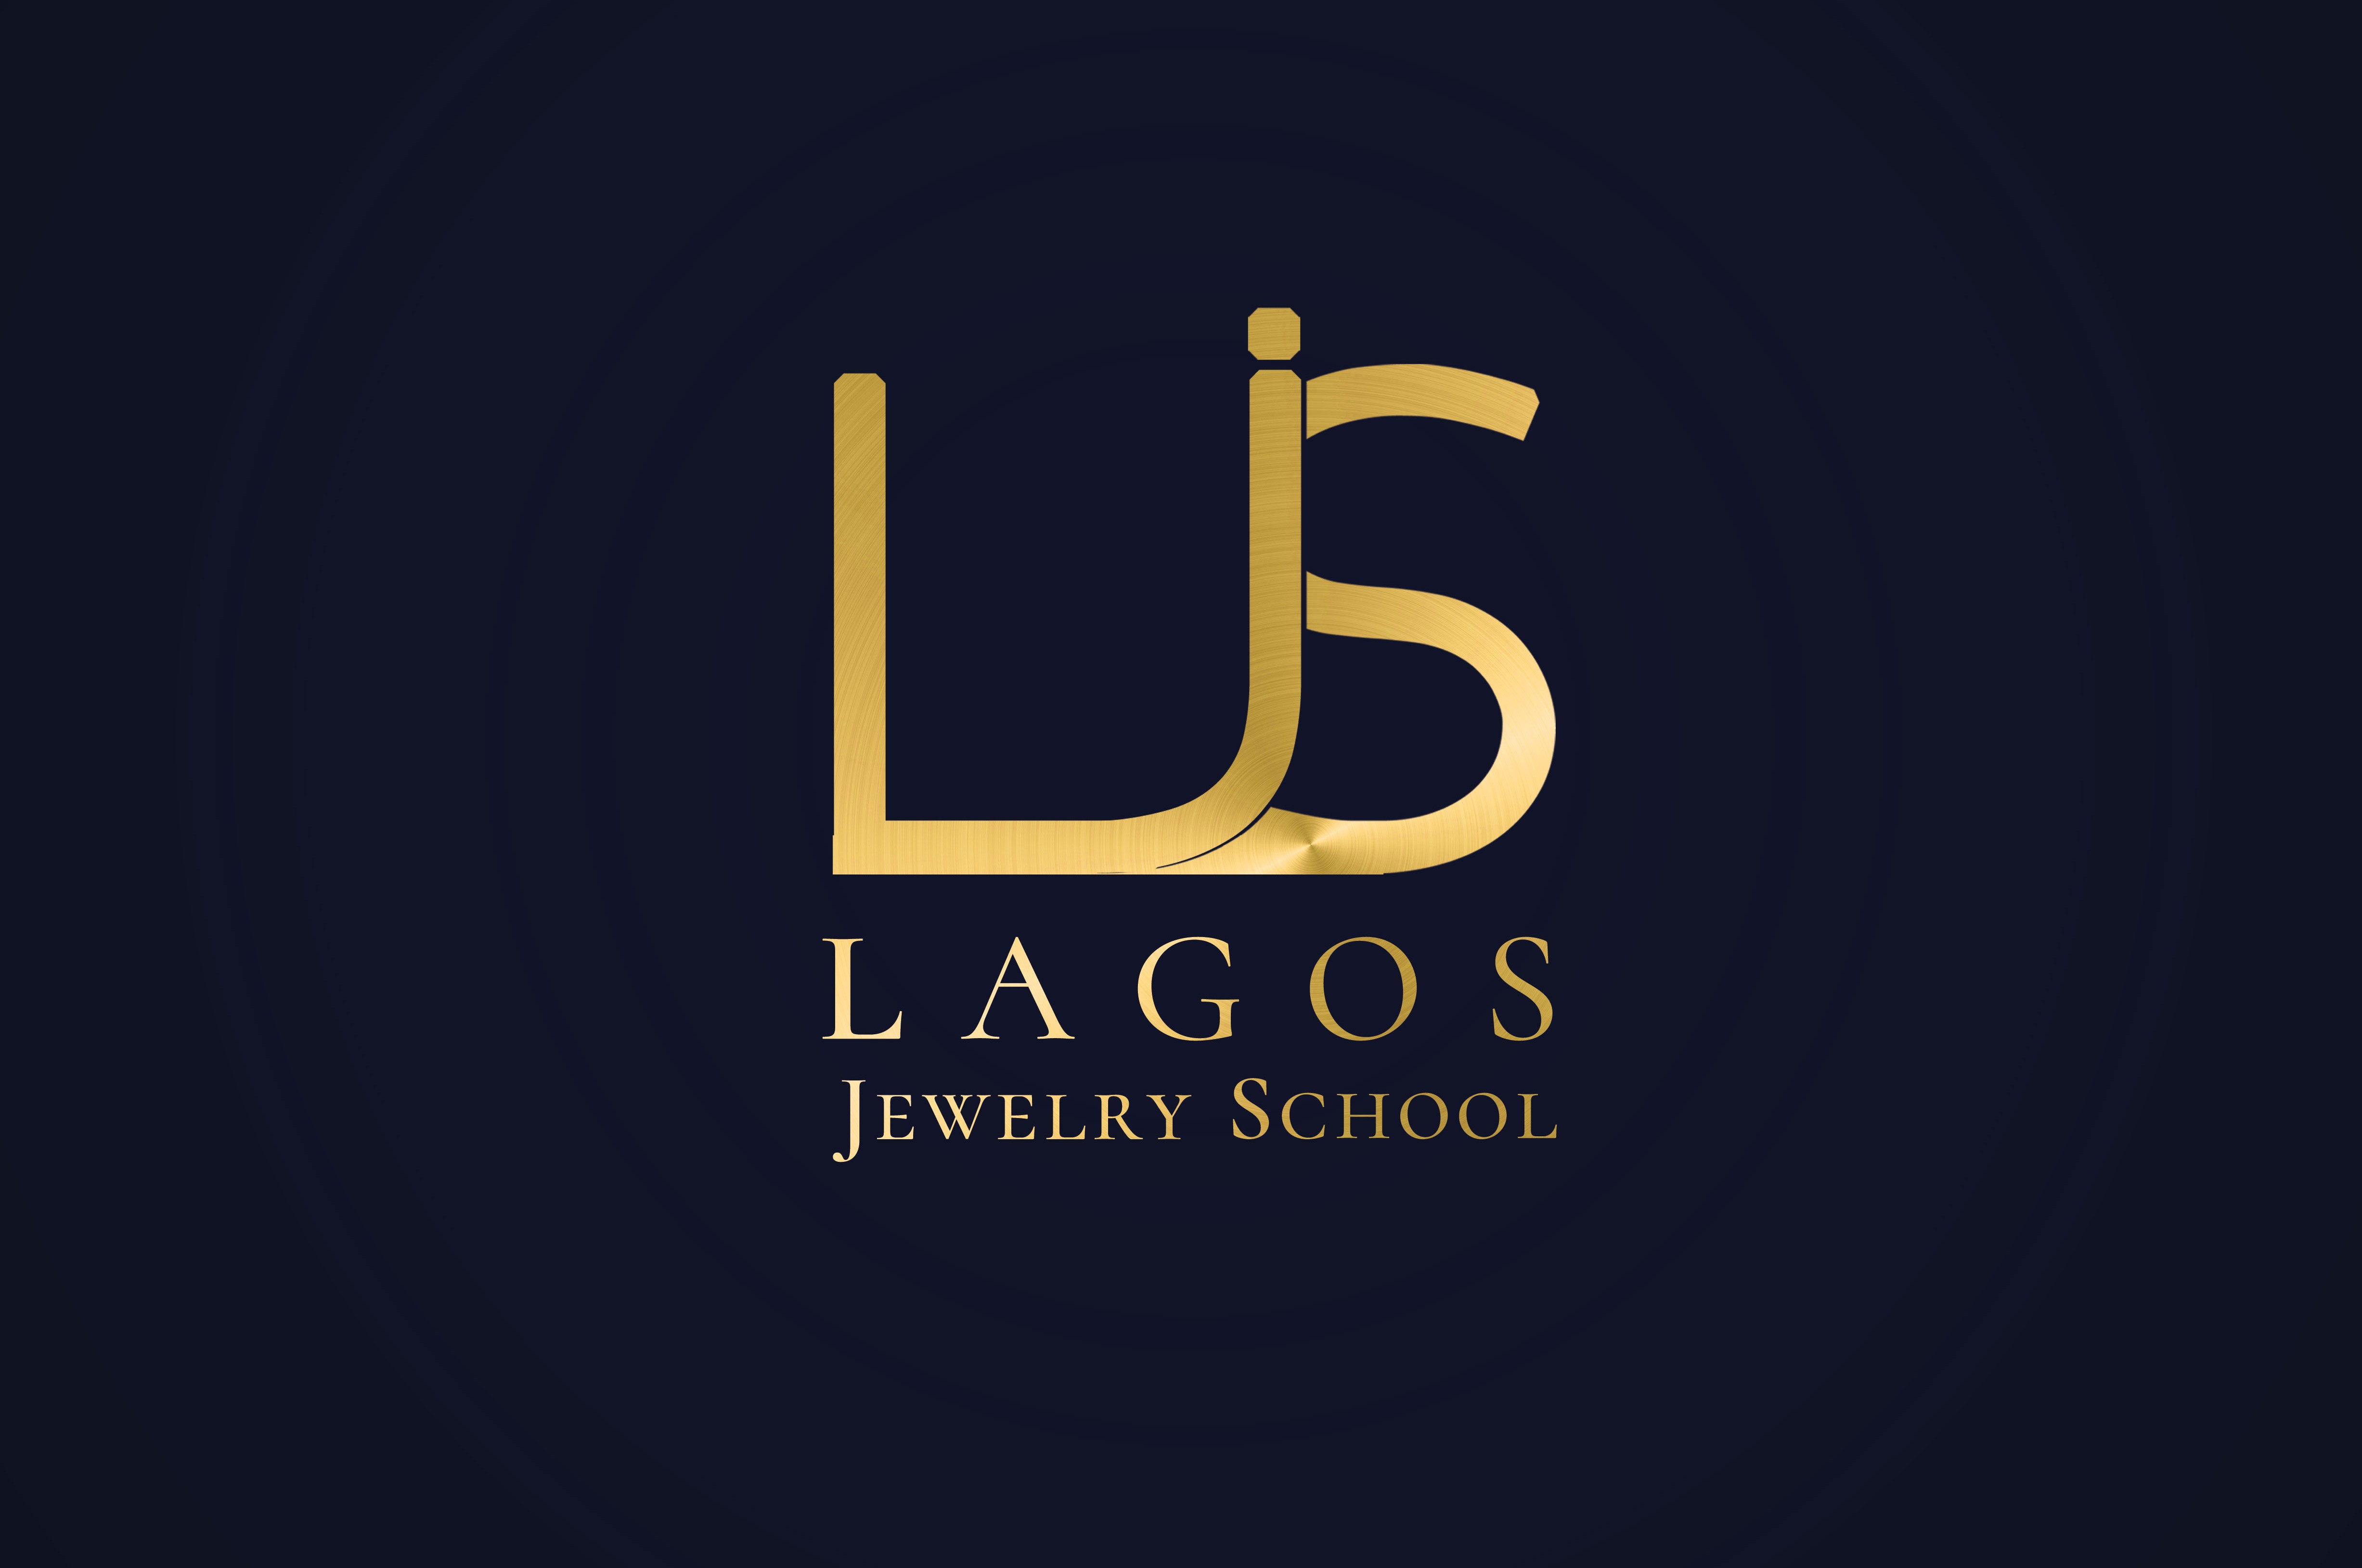 Lagos Jewelry School